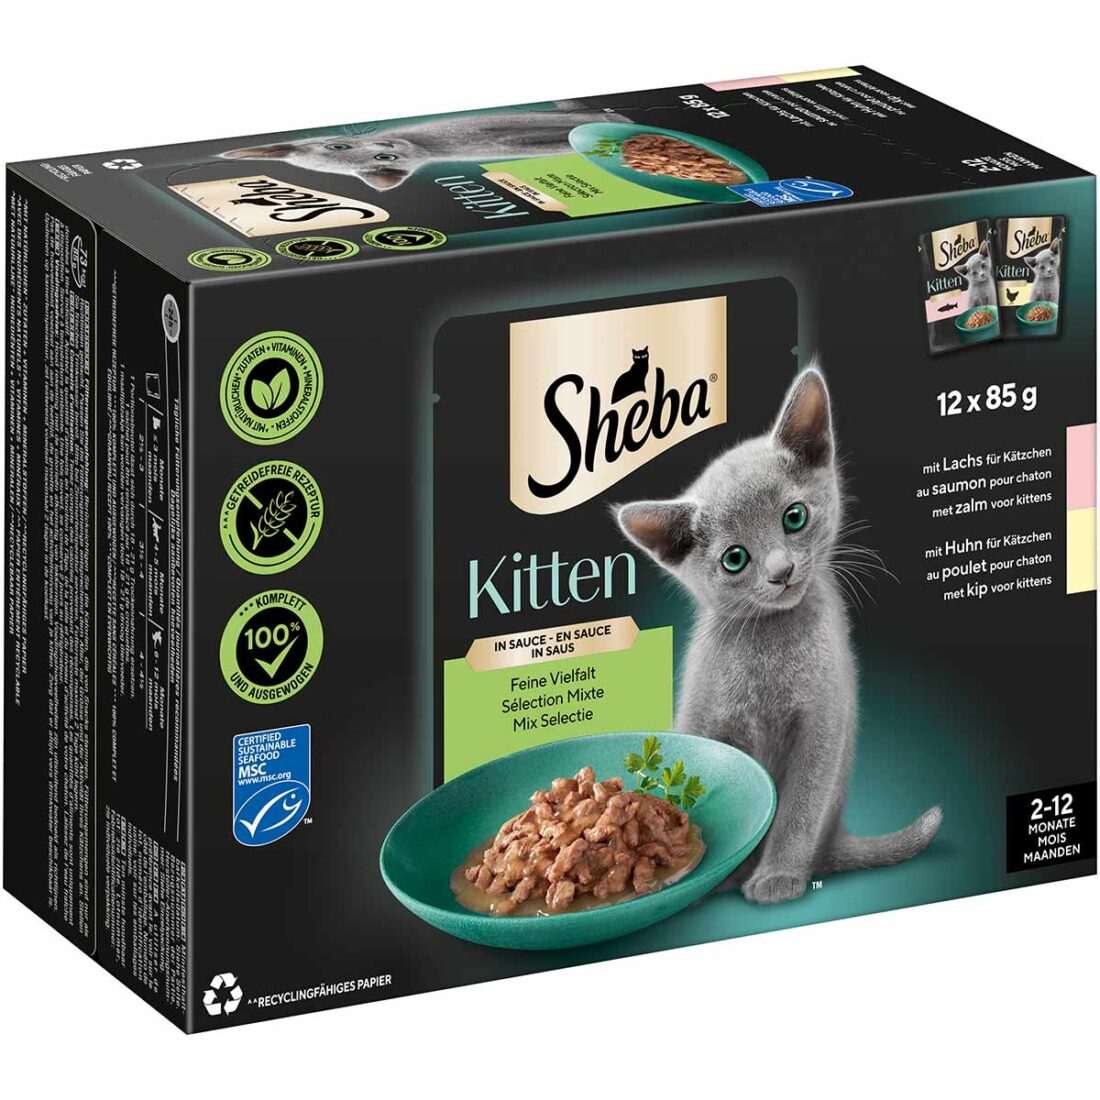 Sheba Multipack Kitten v omáčce Feine Vielfalt